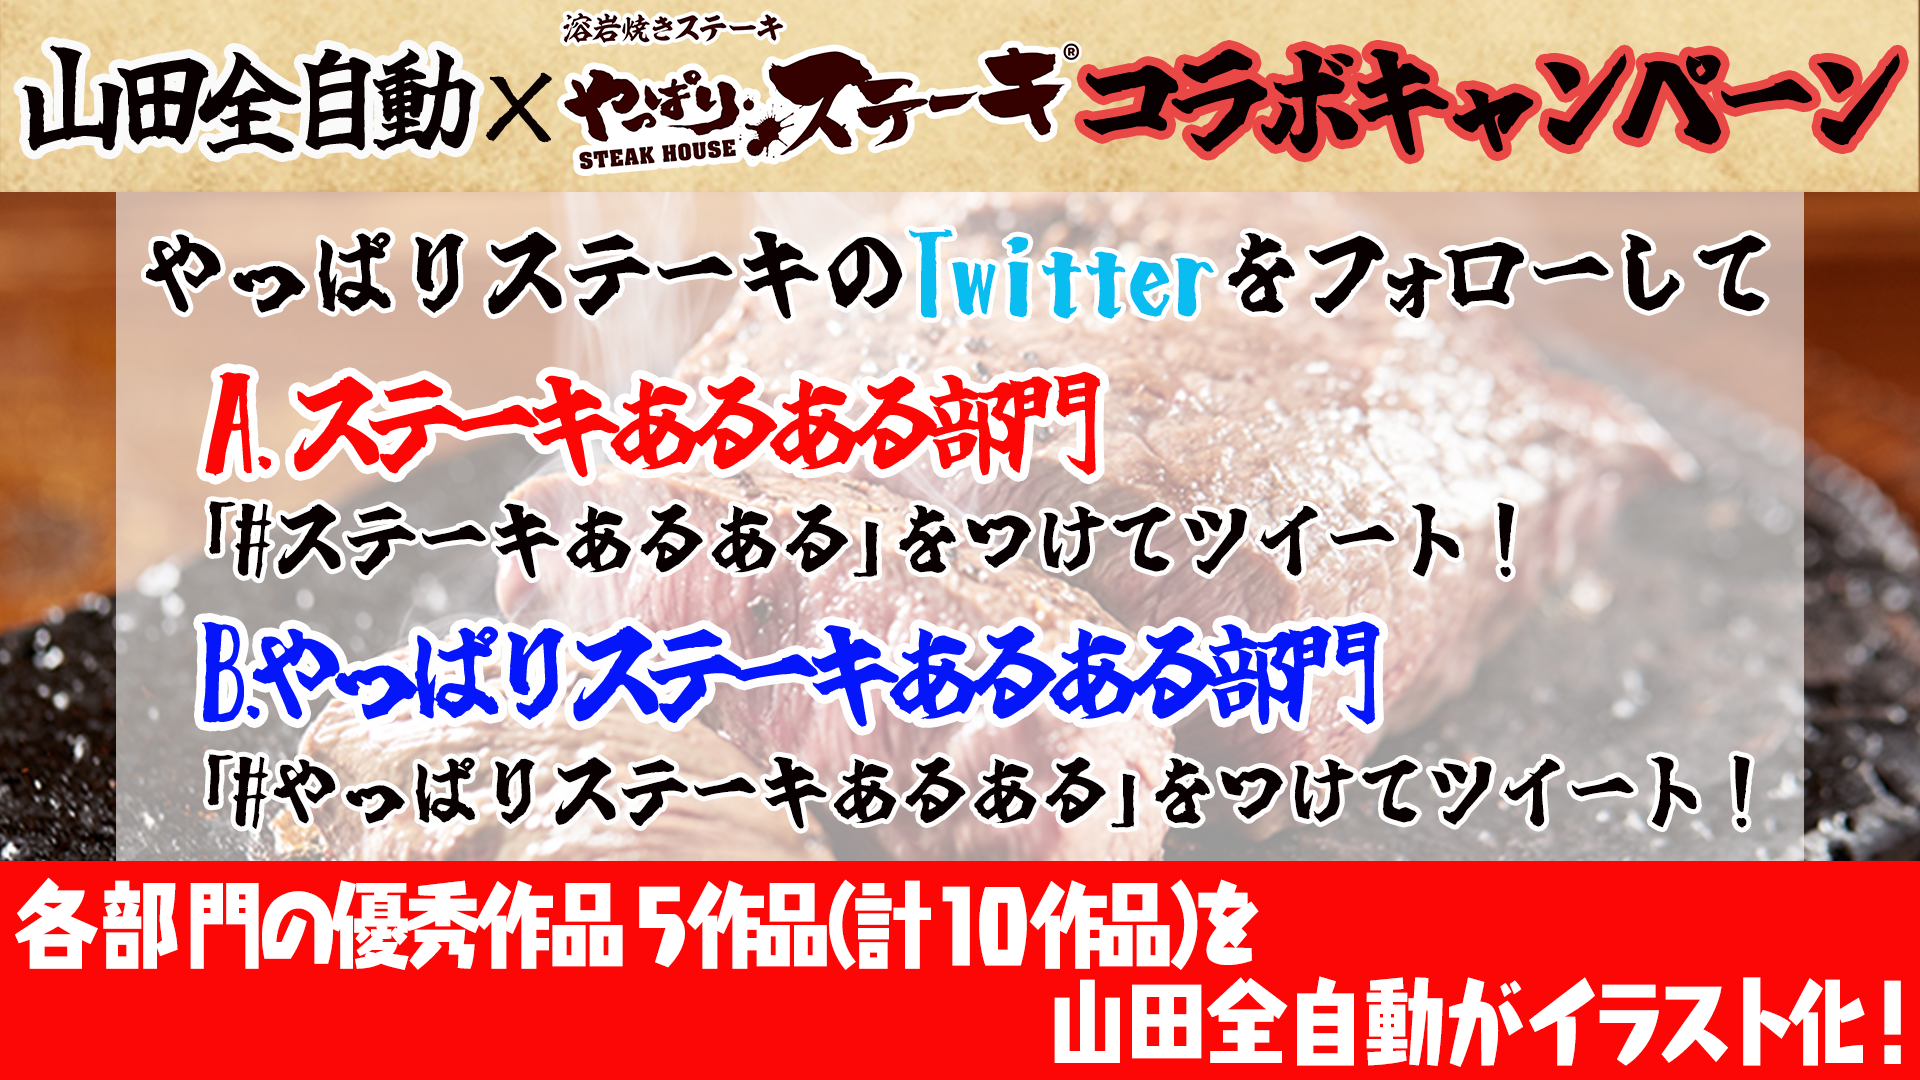 やっぱりステーキ×山田全自動コラボTwitterキャンペーン